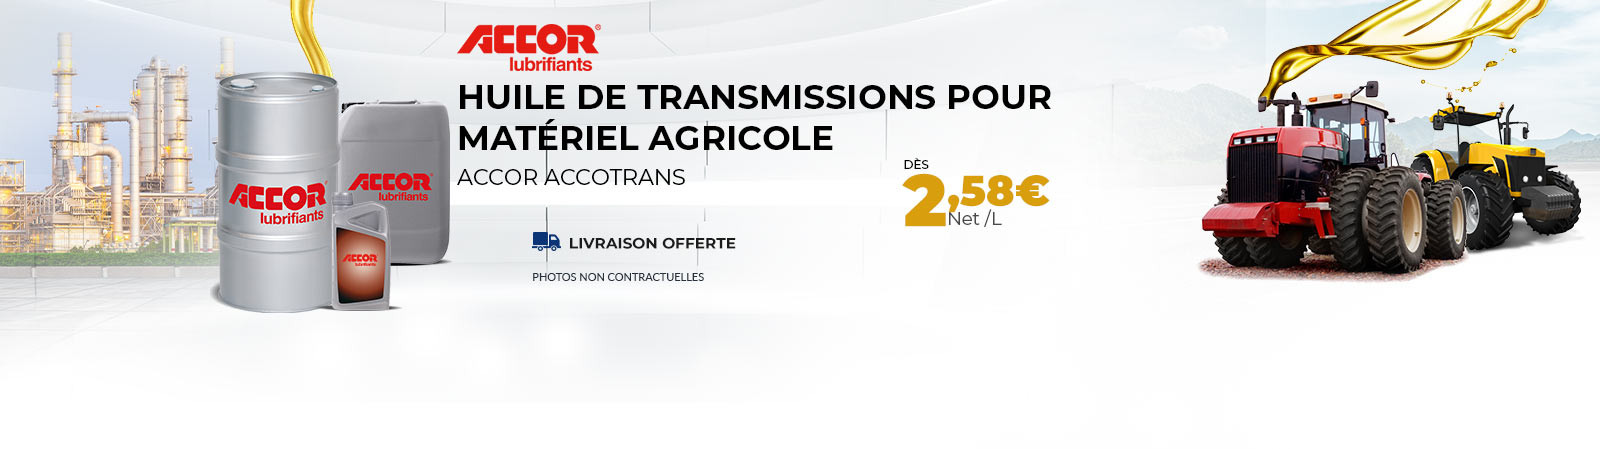 Huile de Transmissions pour matériel agricole dès 2.58 €/l PORT OFFERT